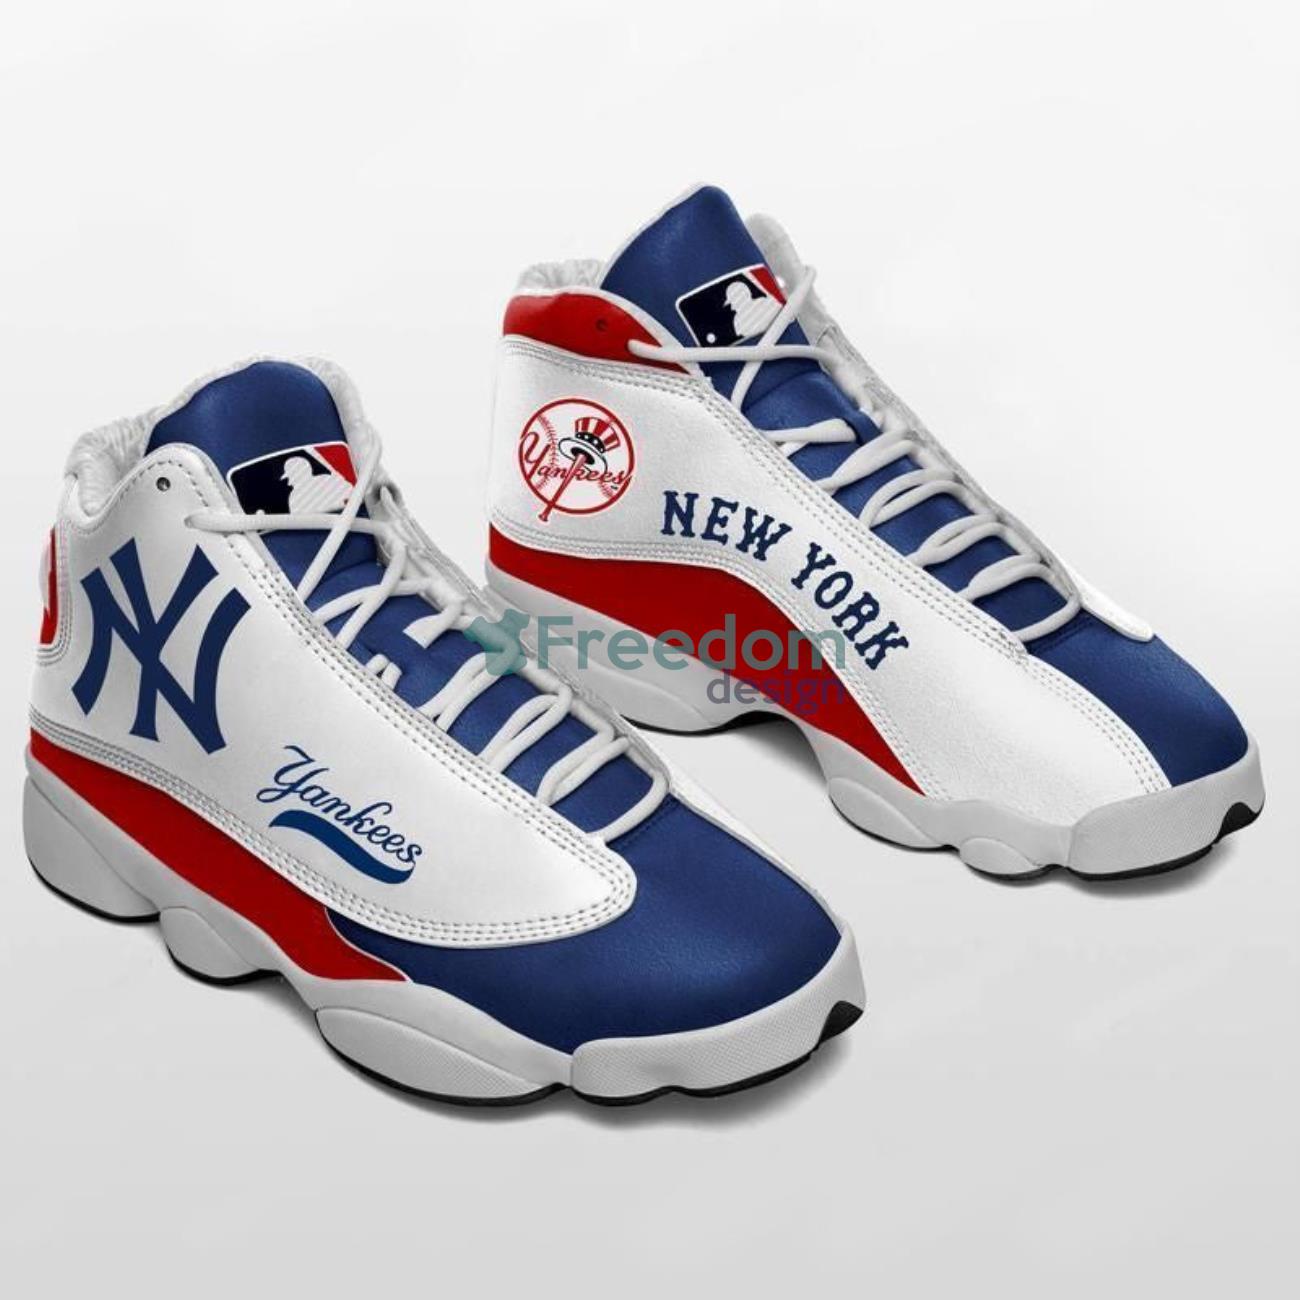 New York Yankees Team Air Jordan 13 Sneaker Shoes